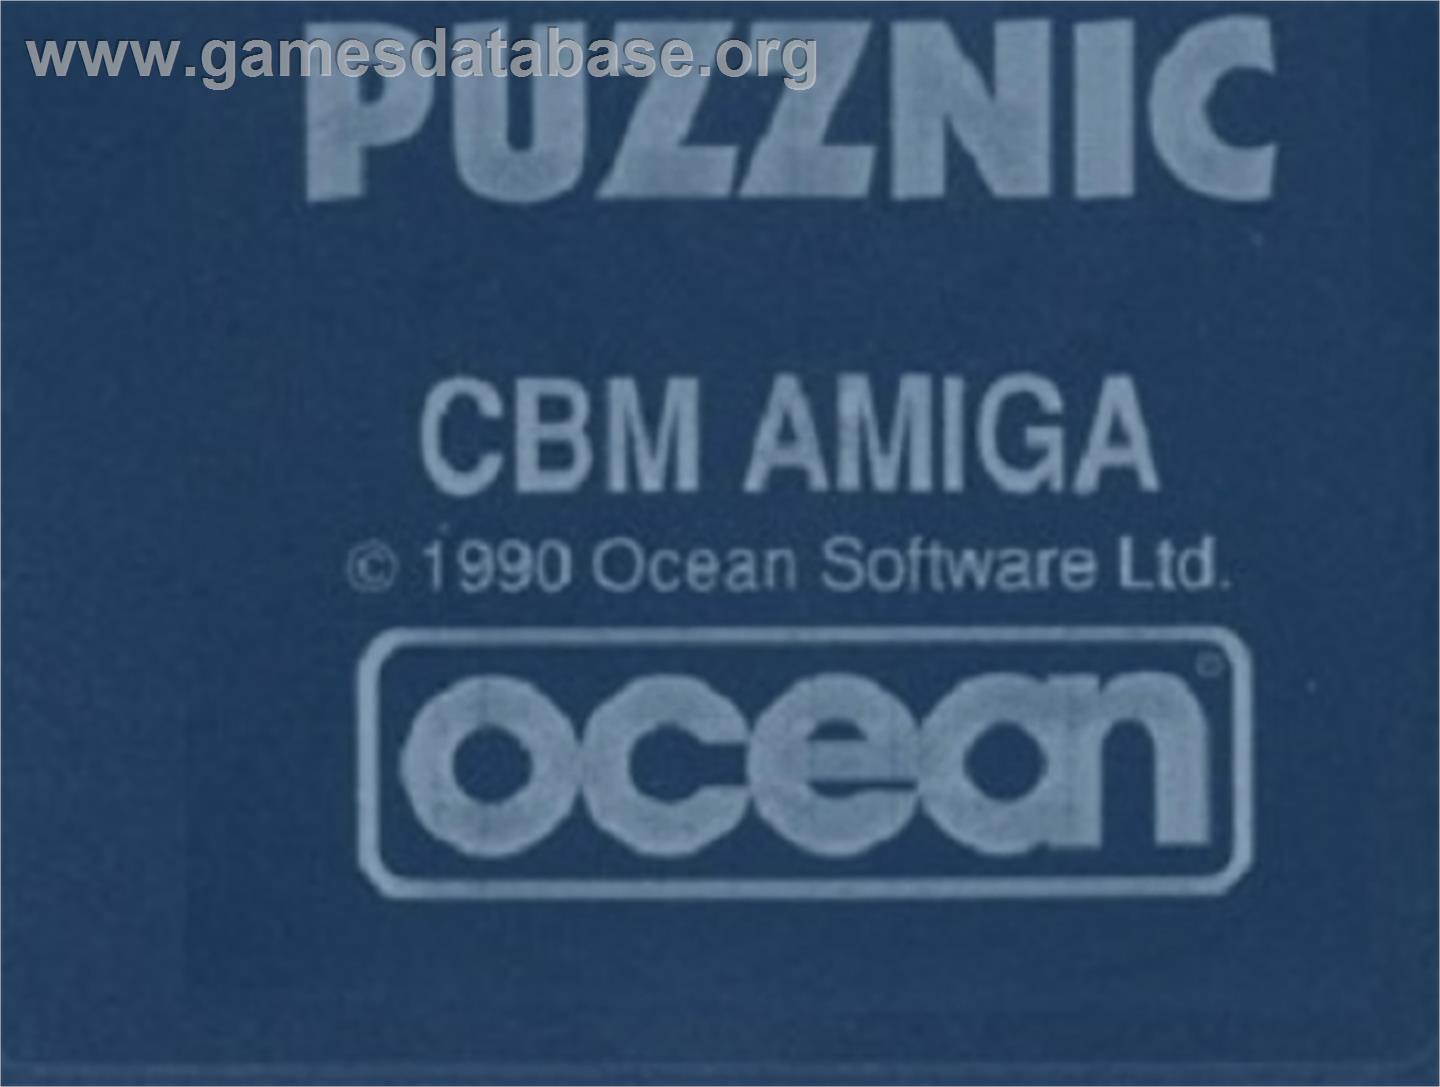 Puzznic - Commodore Amiga - Artwork - Cartridge Top